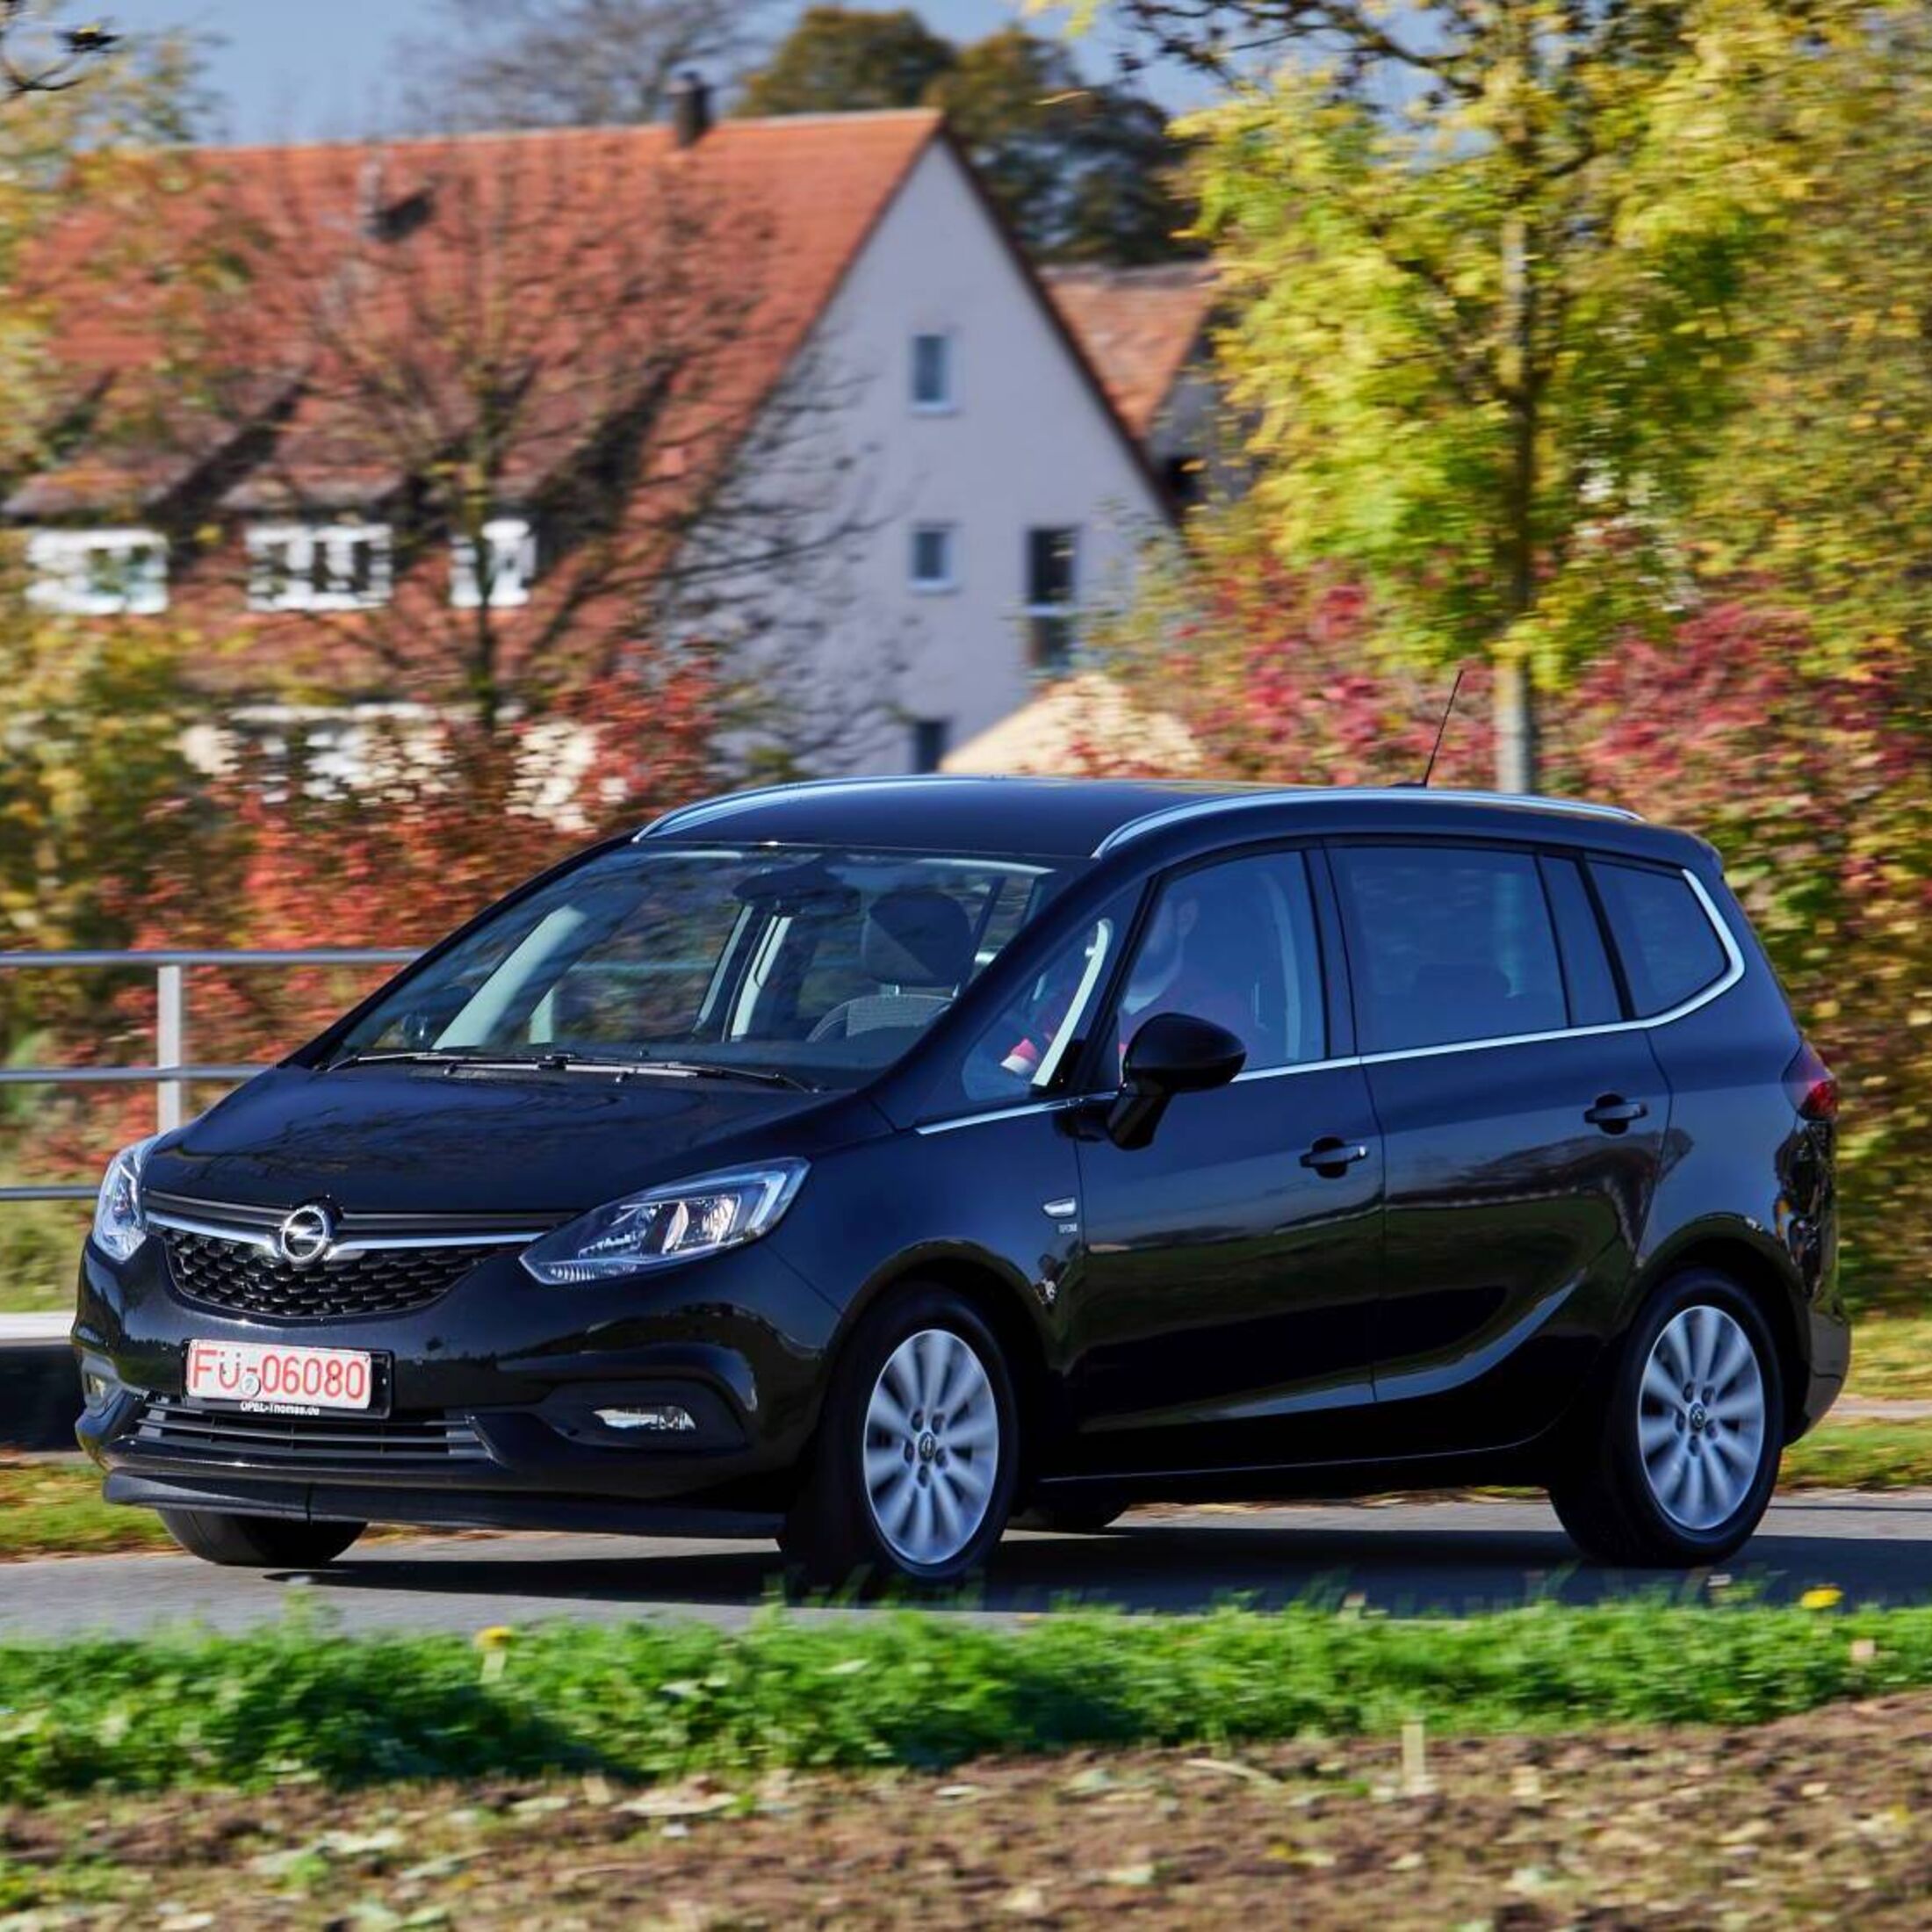 Gebraucht-Check: Opel Zafira (Typ C/Tourer; 2011-2019)